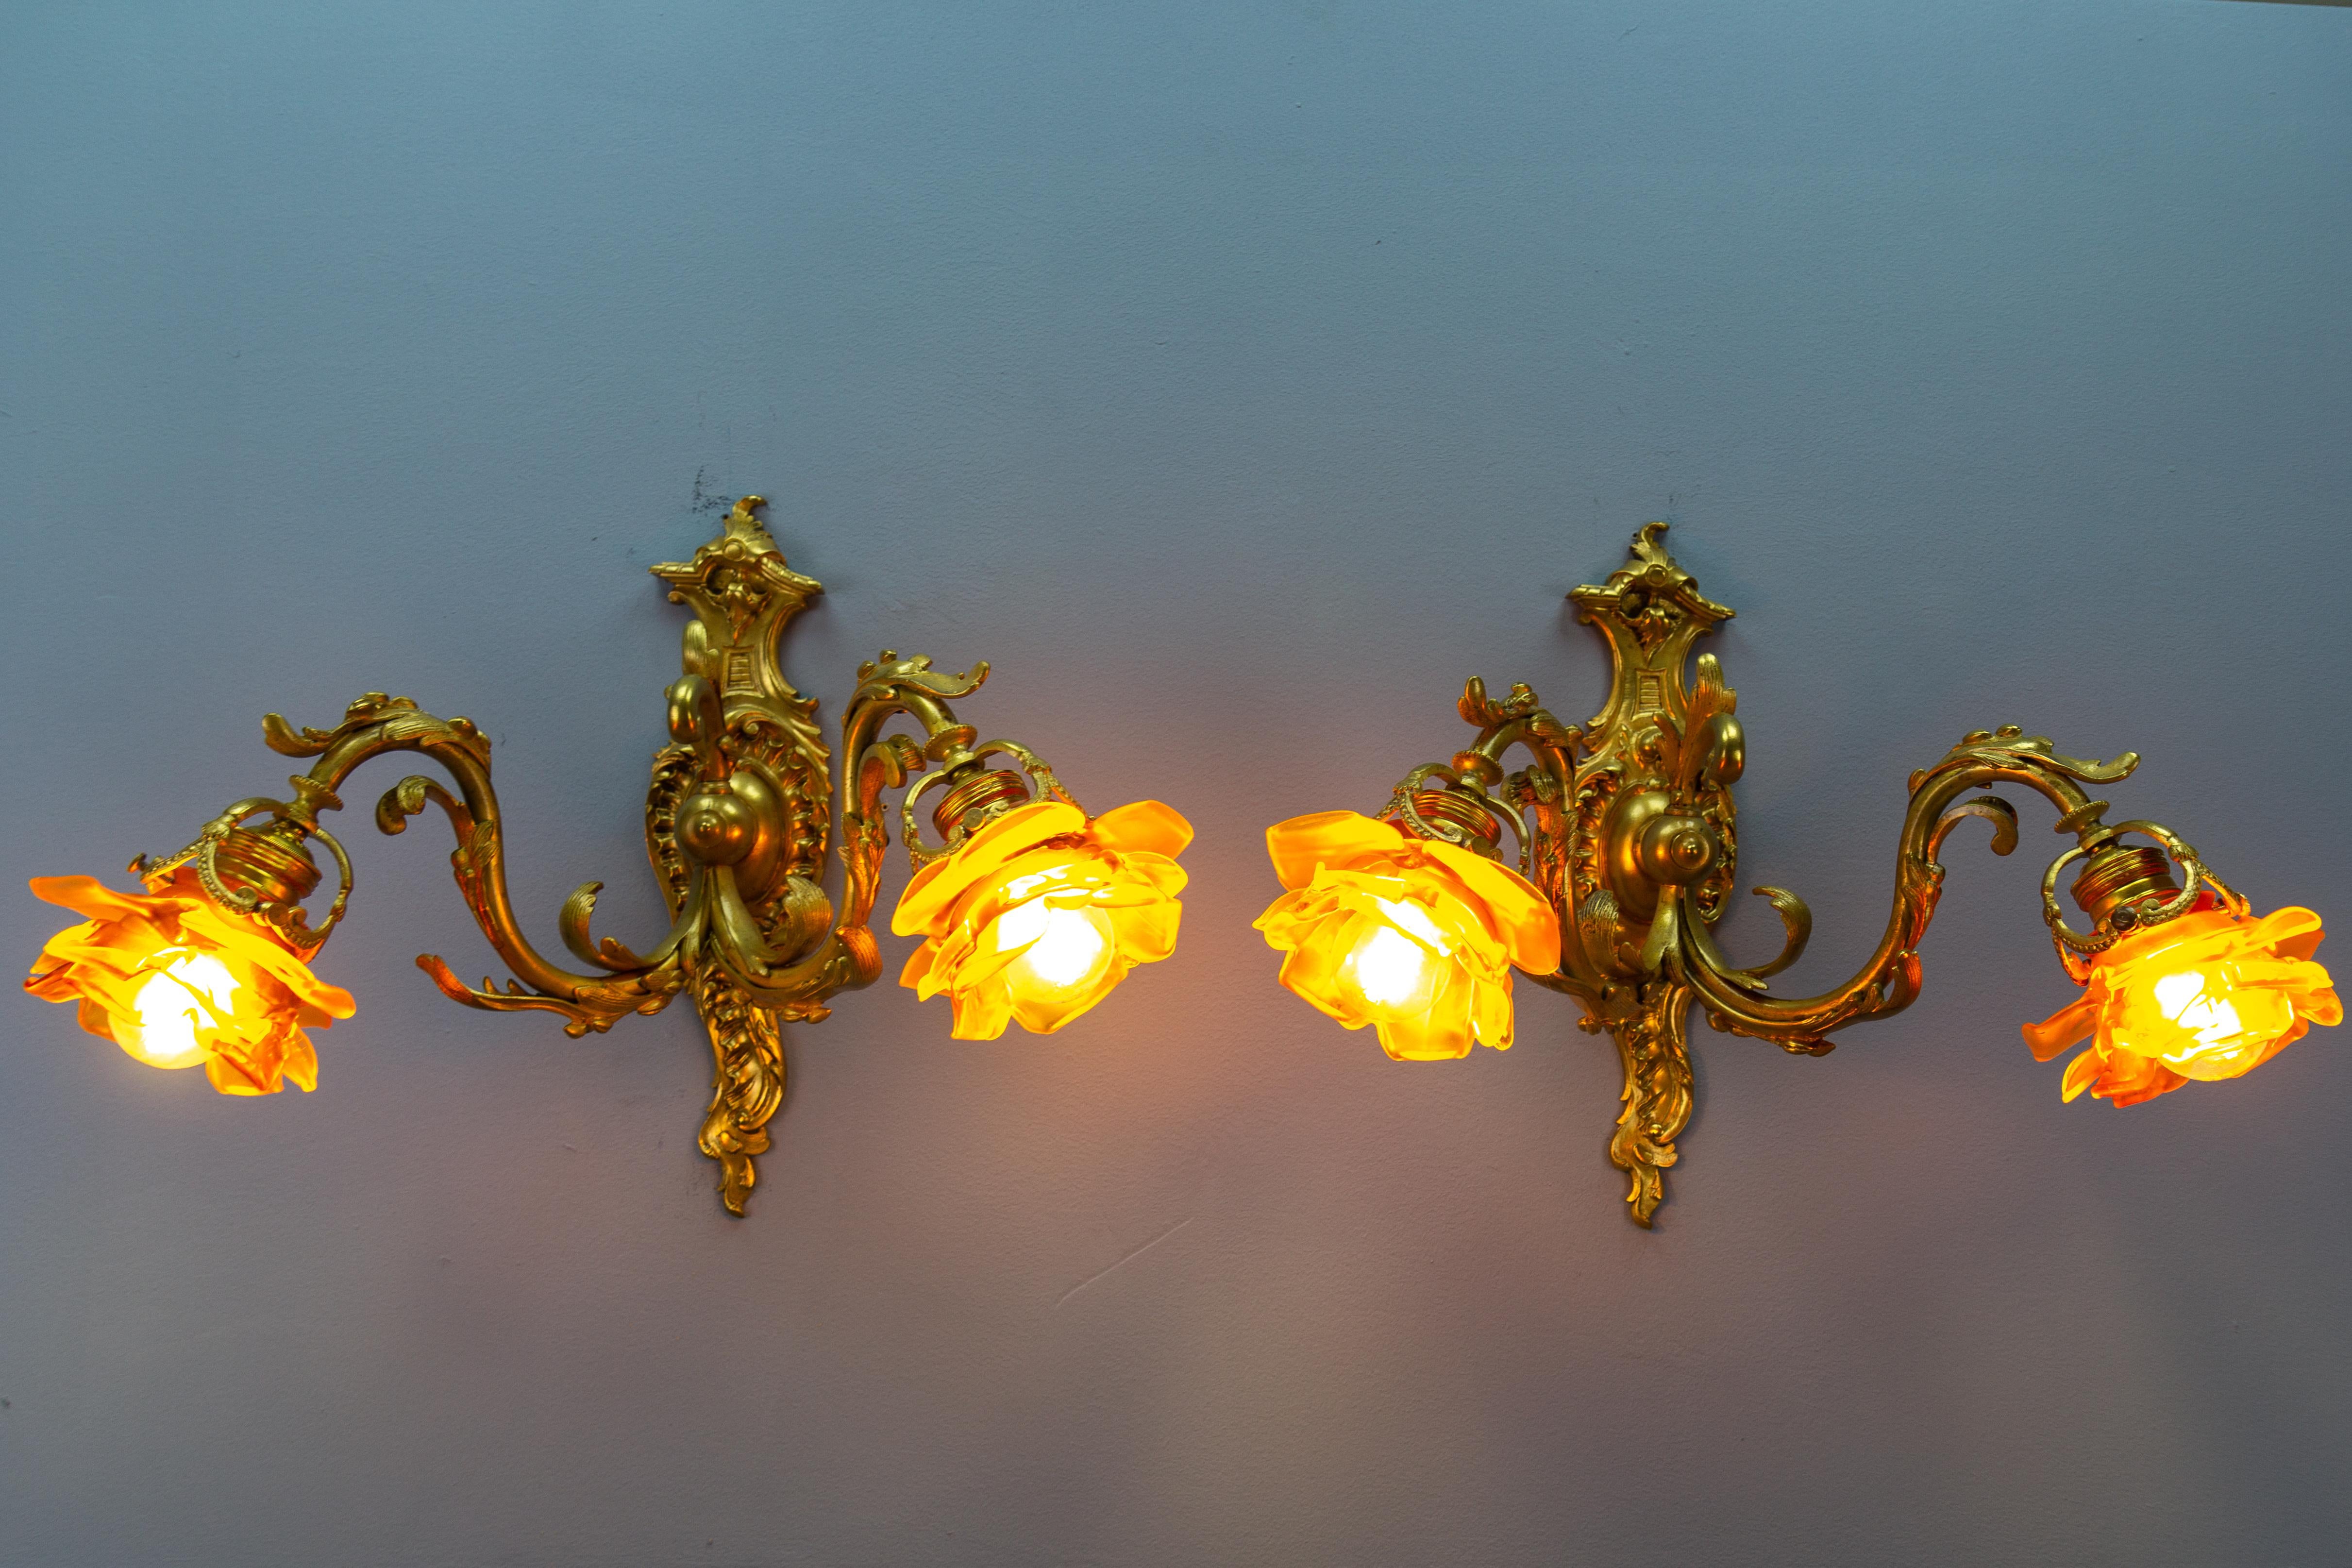 Paire d'appliques à deux bras de style Louis XV en bronze et verre brun, datant d'environ 1900.
Ces grandes et impressionnantes appliques de style Louis XV ou Rococo sont dotées de bras en bronze et d'une plaque arrière au design rococo